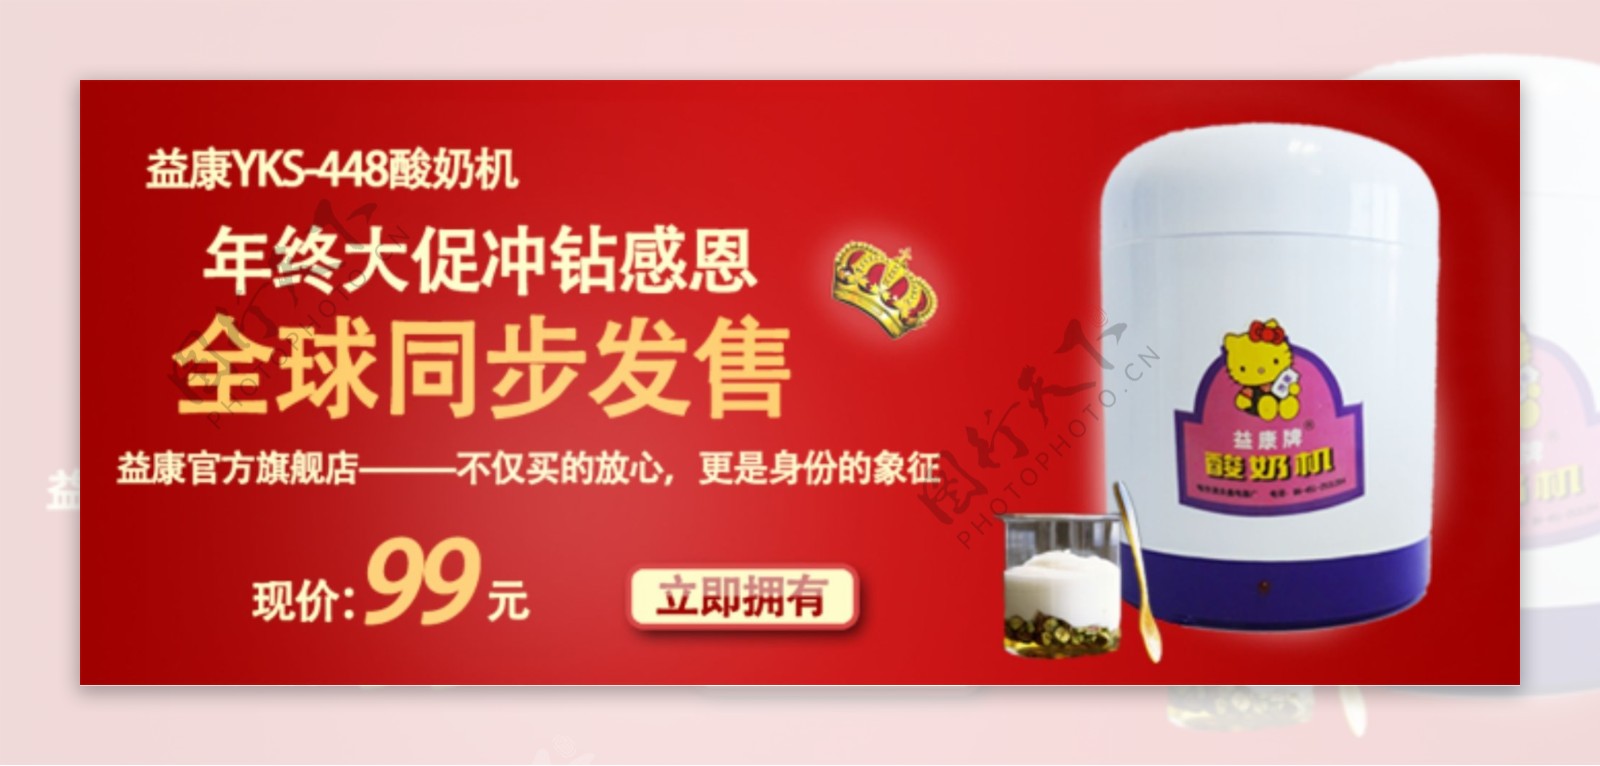 淘宝酸奶机新品发售海报